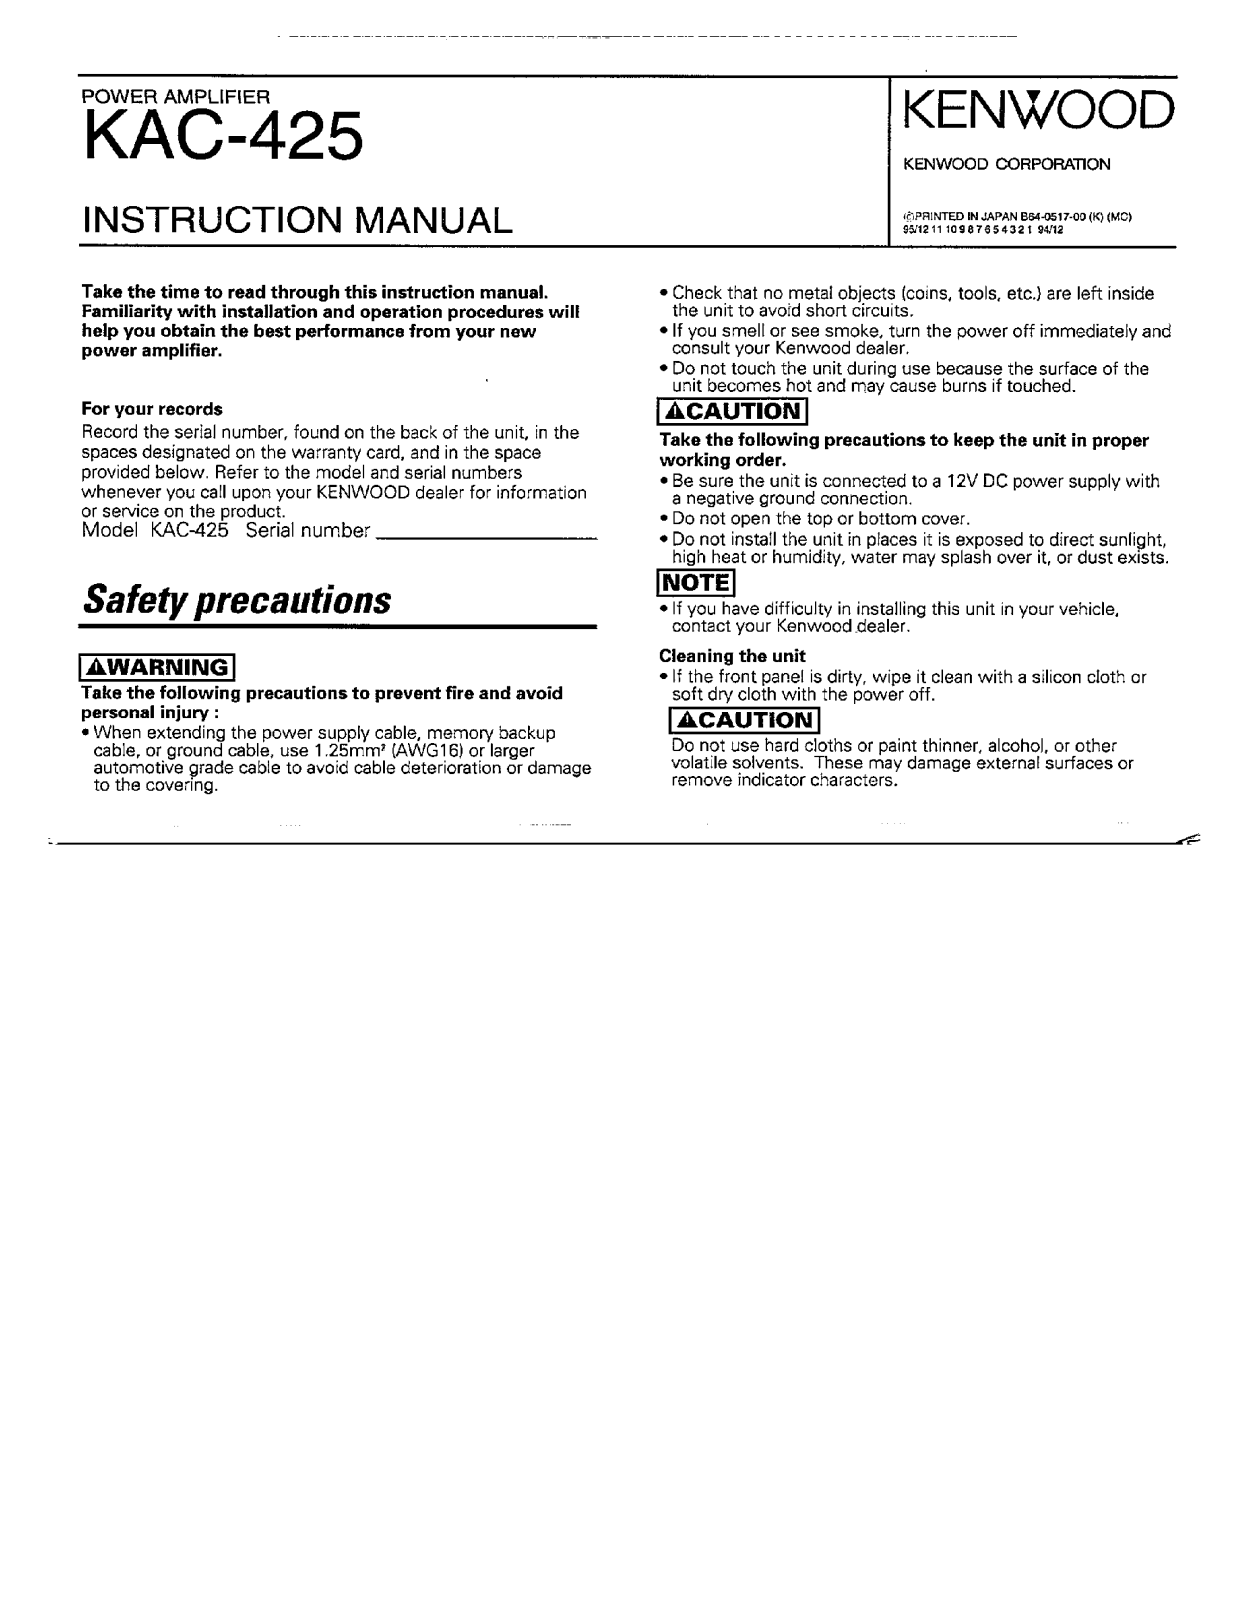 Kenwood KAC-425 Owner's Manual